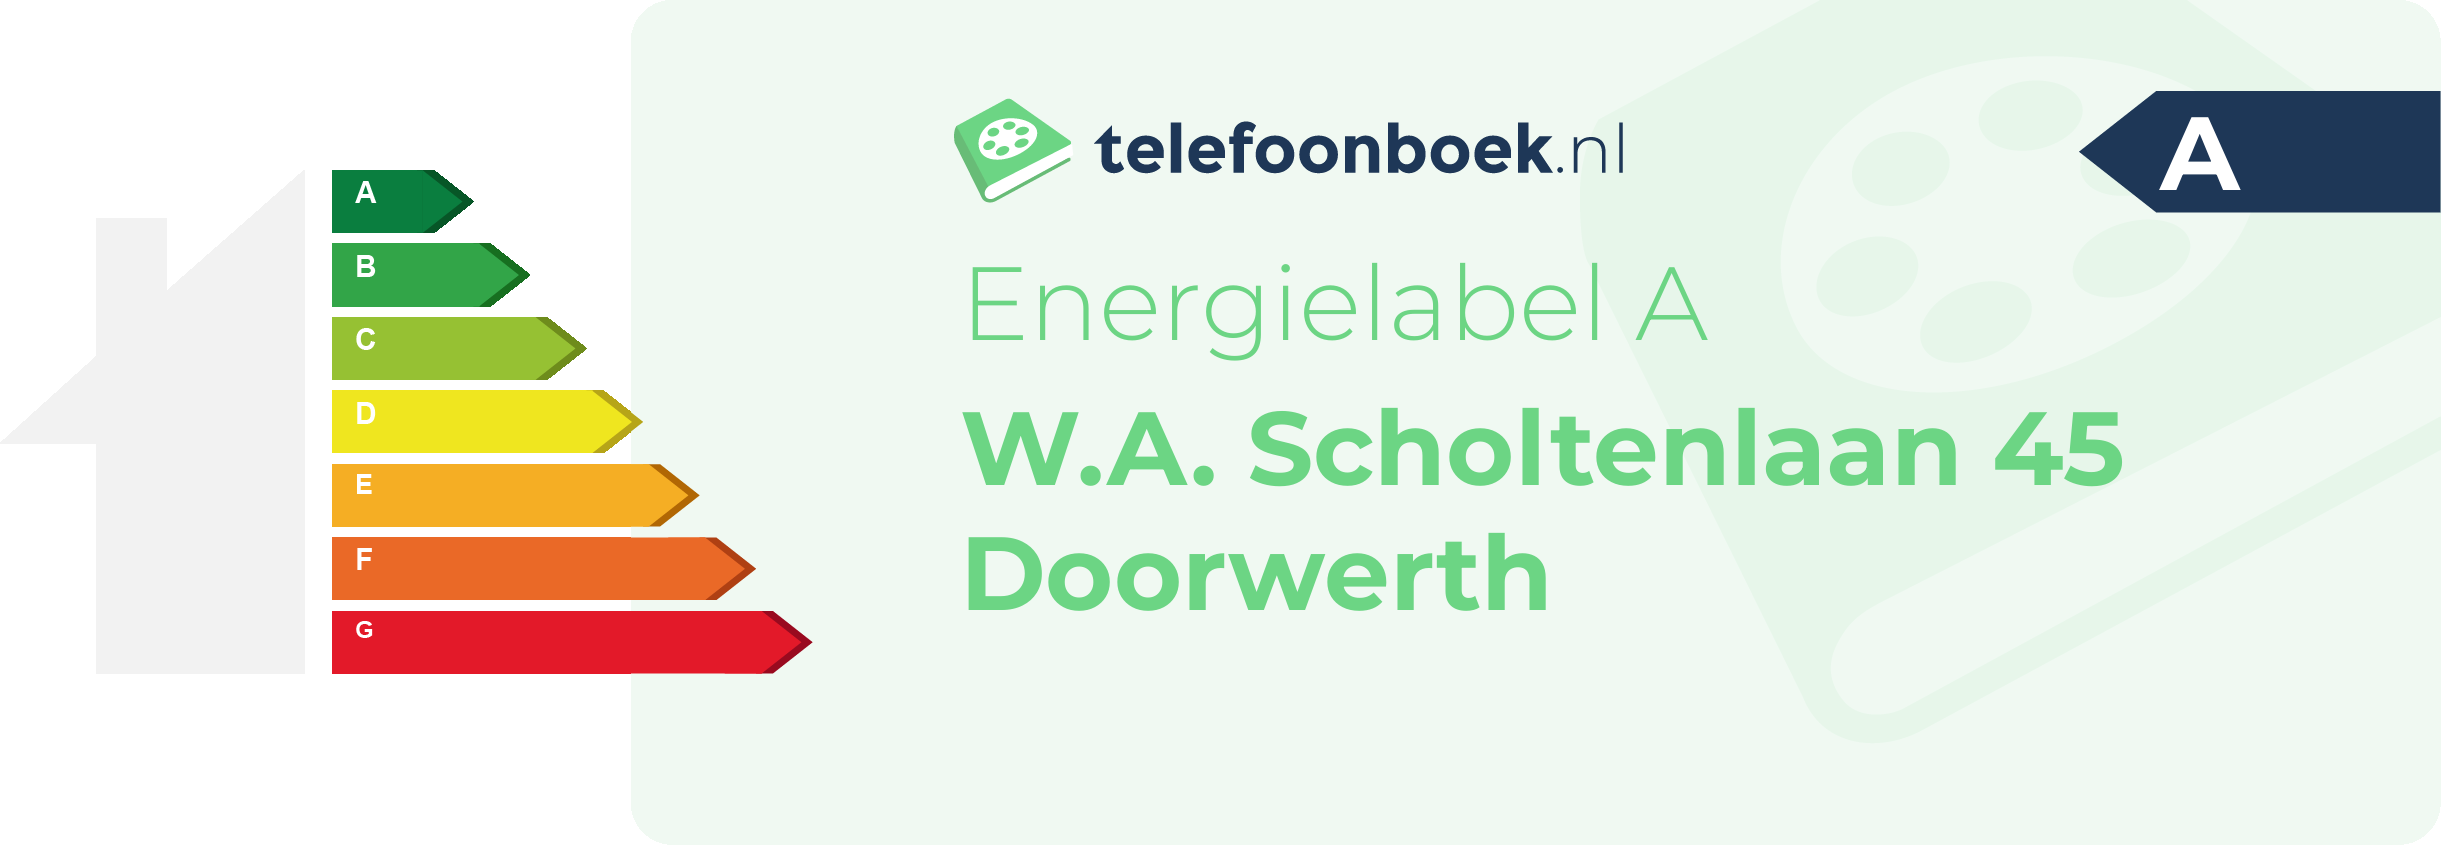 Energielabel W.A. Scholtenlaan 45 Doorwerth